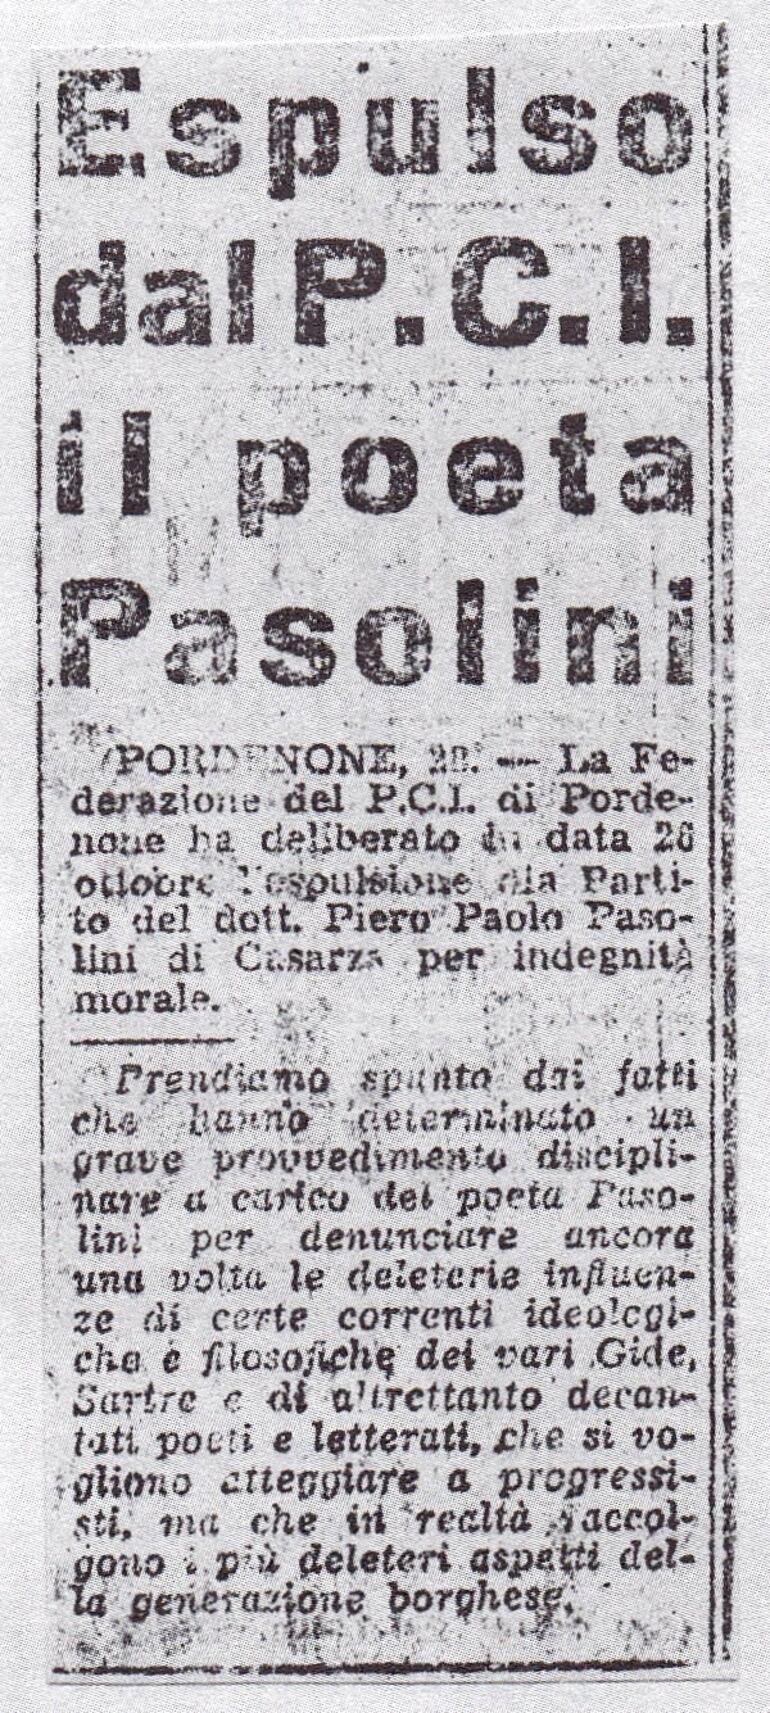 L’Unità, 29 de octubre de 1949: "Expulsado del PCI el poeta Pasolini".